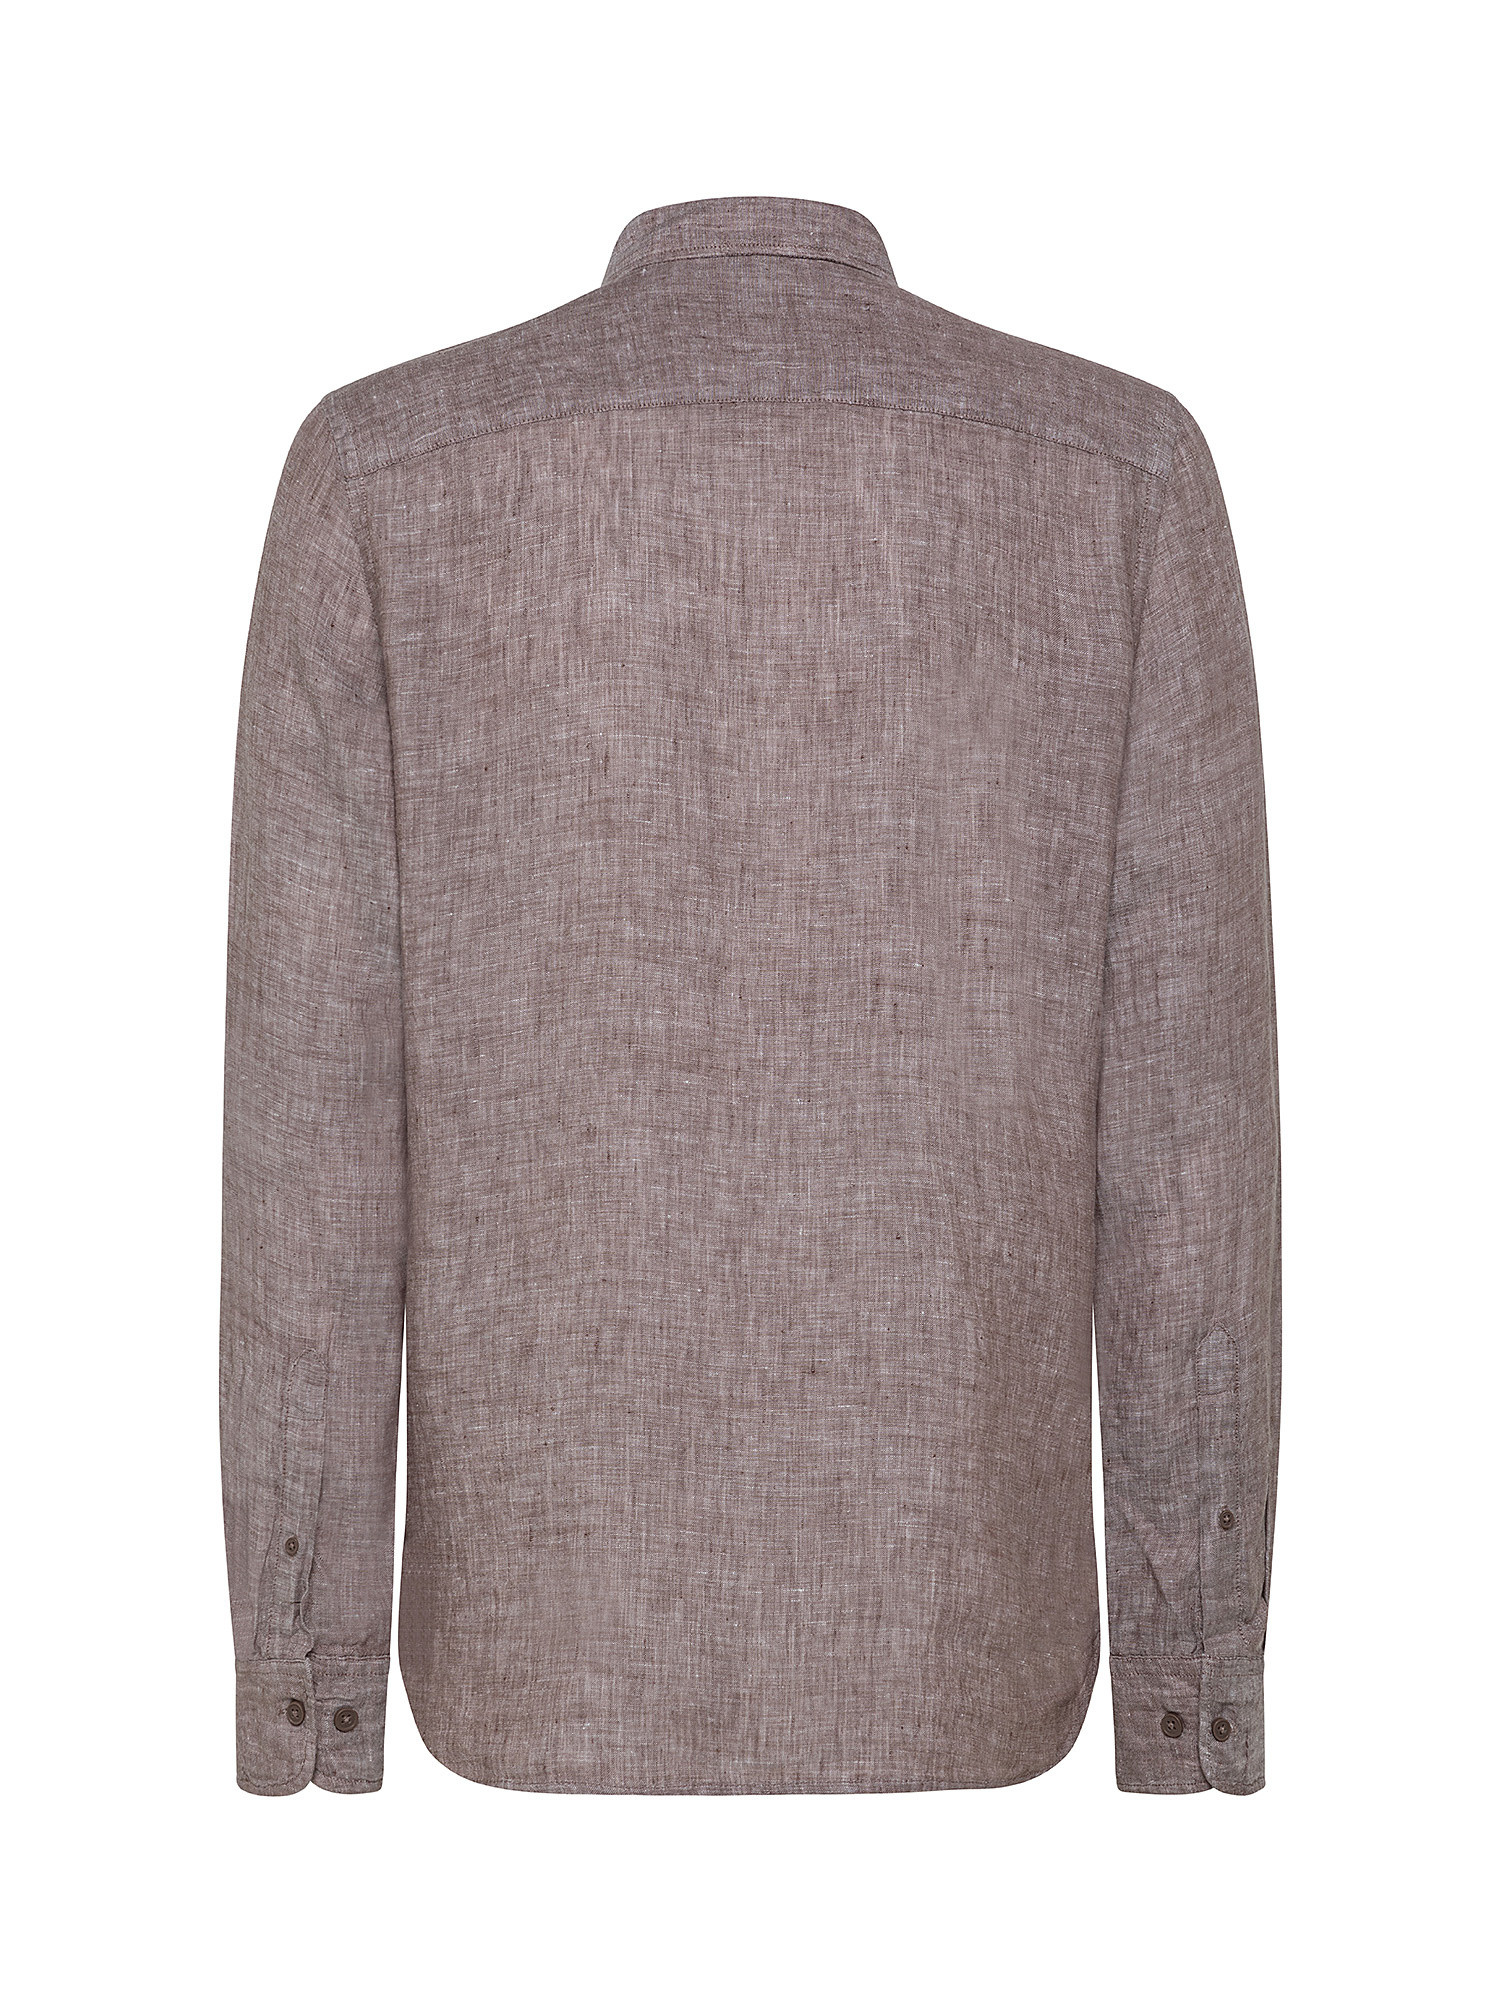 Camicia puro lino collo francese, Marrone chiaro, large image number 1